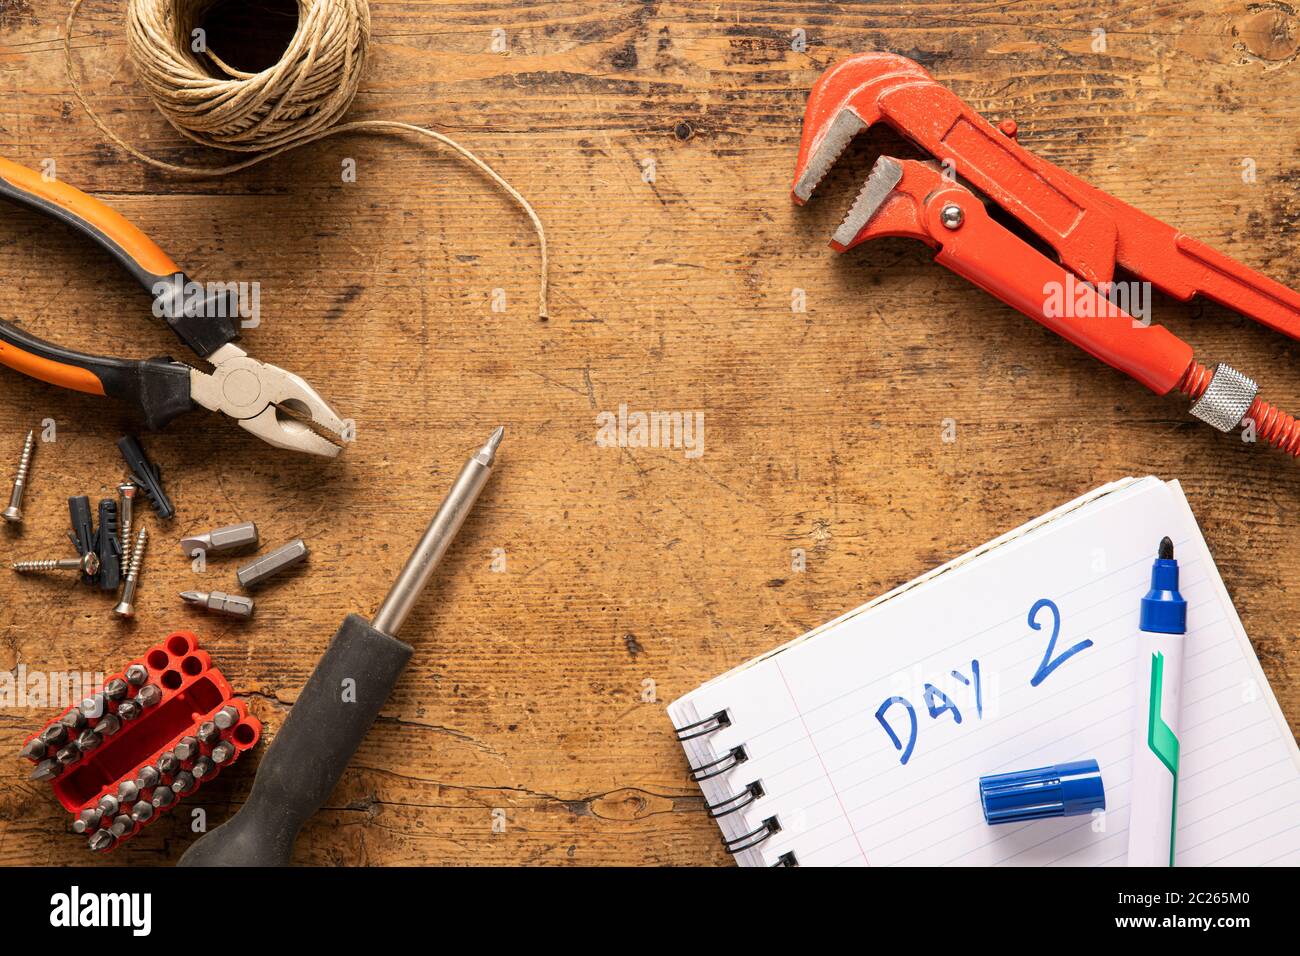 Schraubendreher, Notebook, Schrauben und andere Werkzeuge auf einer Holzoberfläche Stockfoto